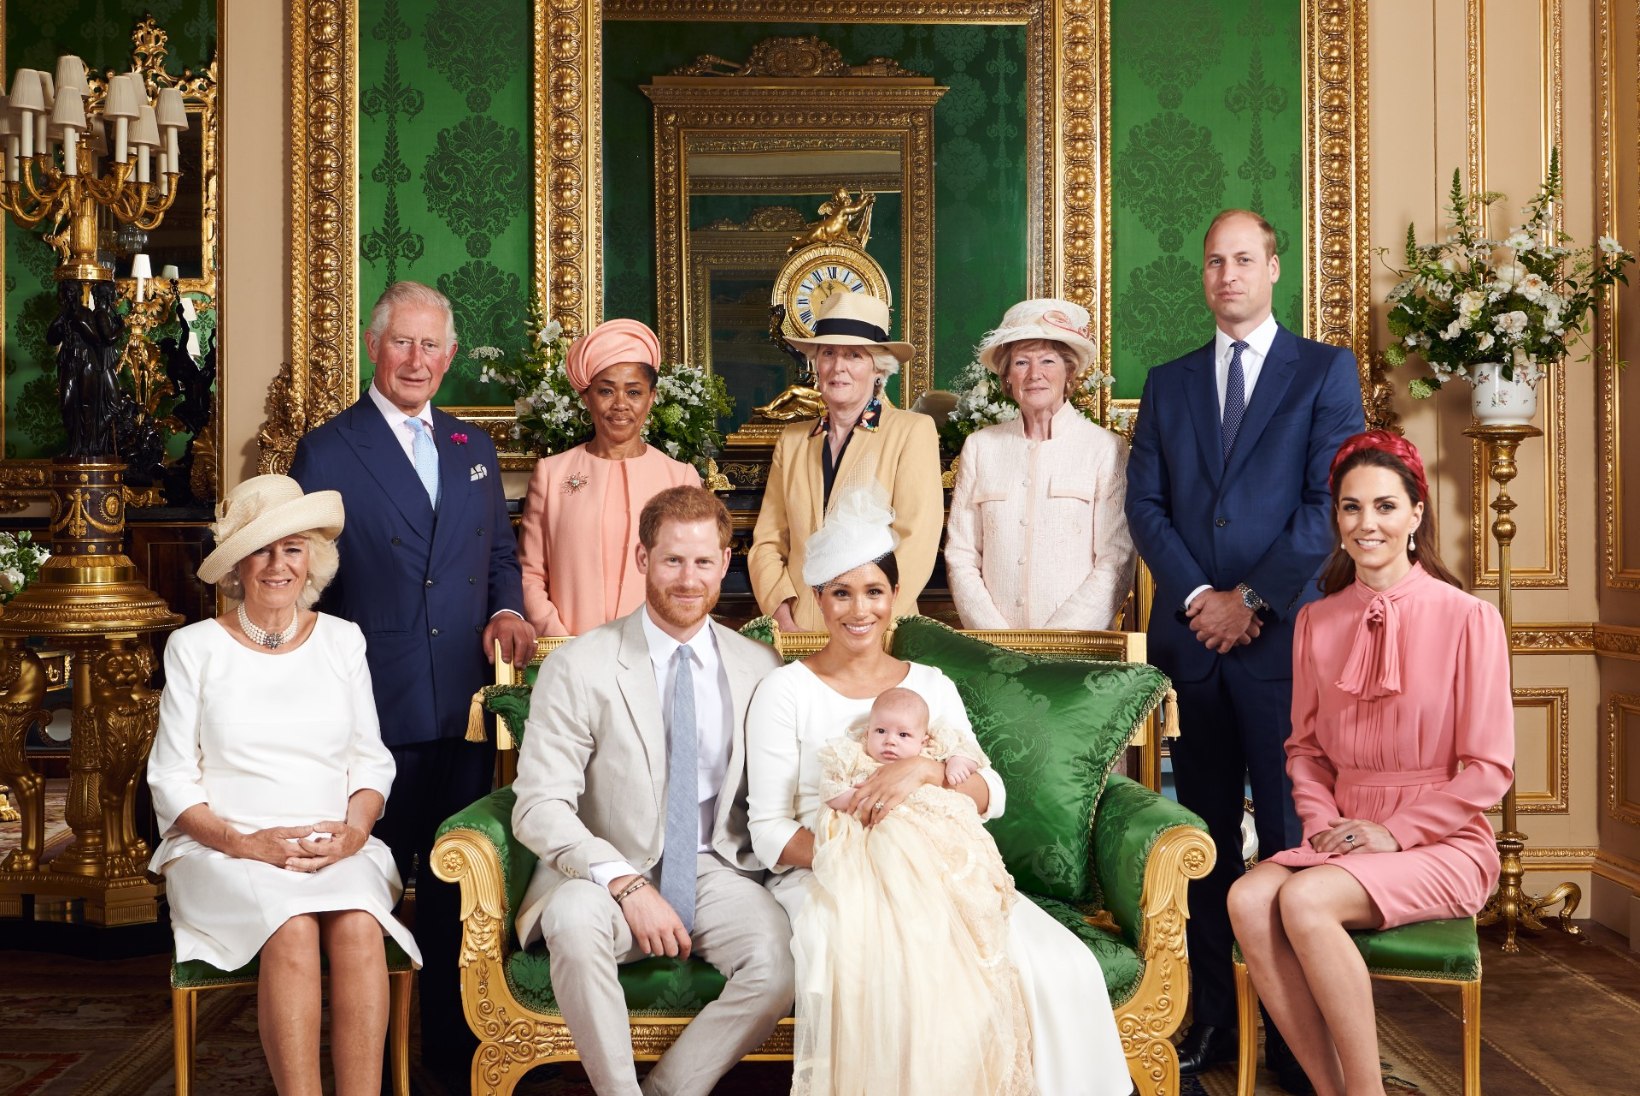 FOTOD | Kuninglik beebi Archie ristiti, ühtlasi tehti austusavaldus printsess Dianale